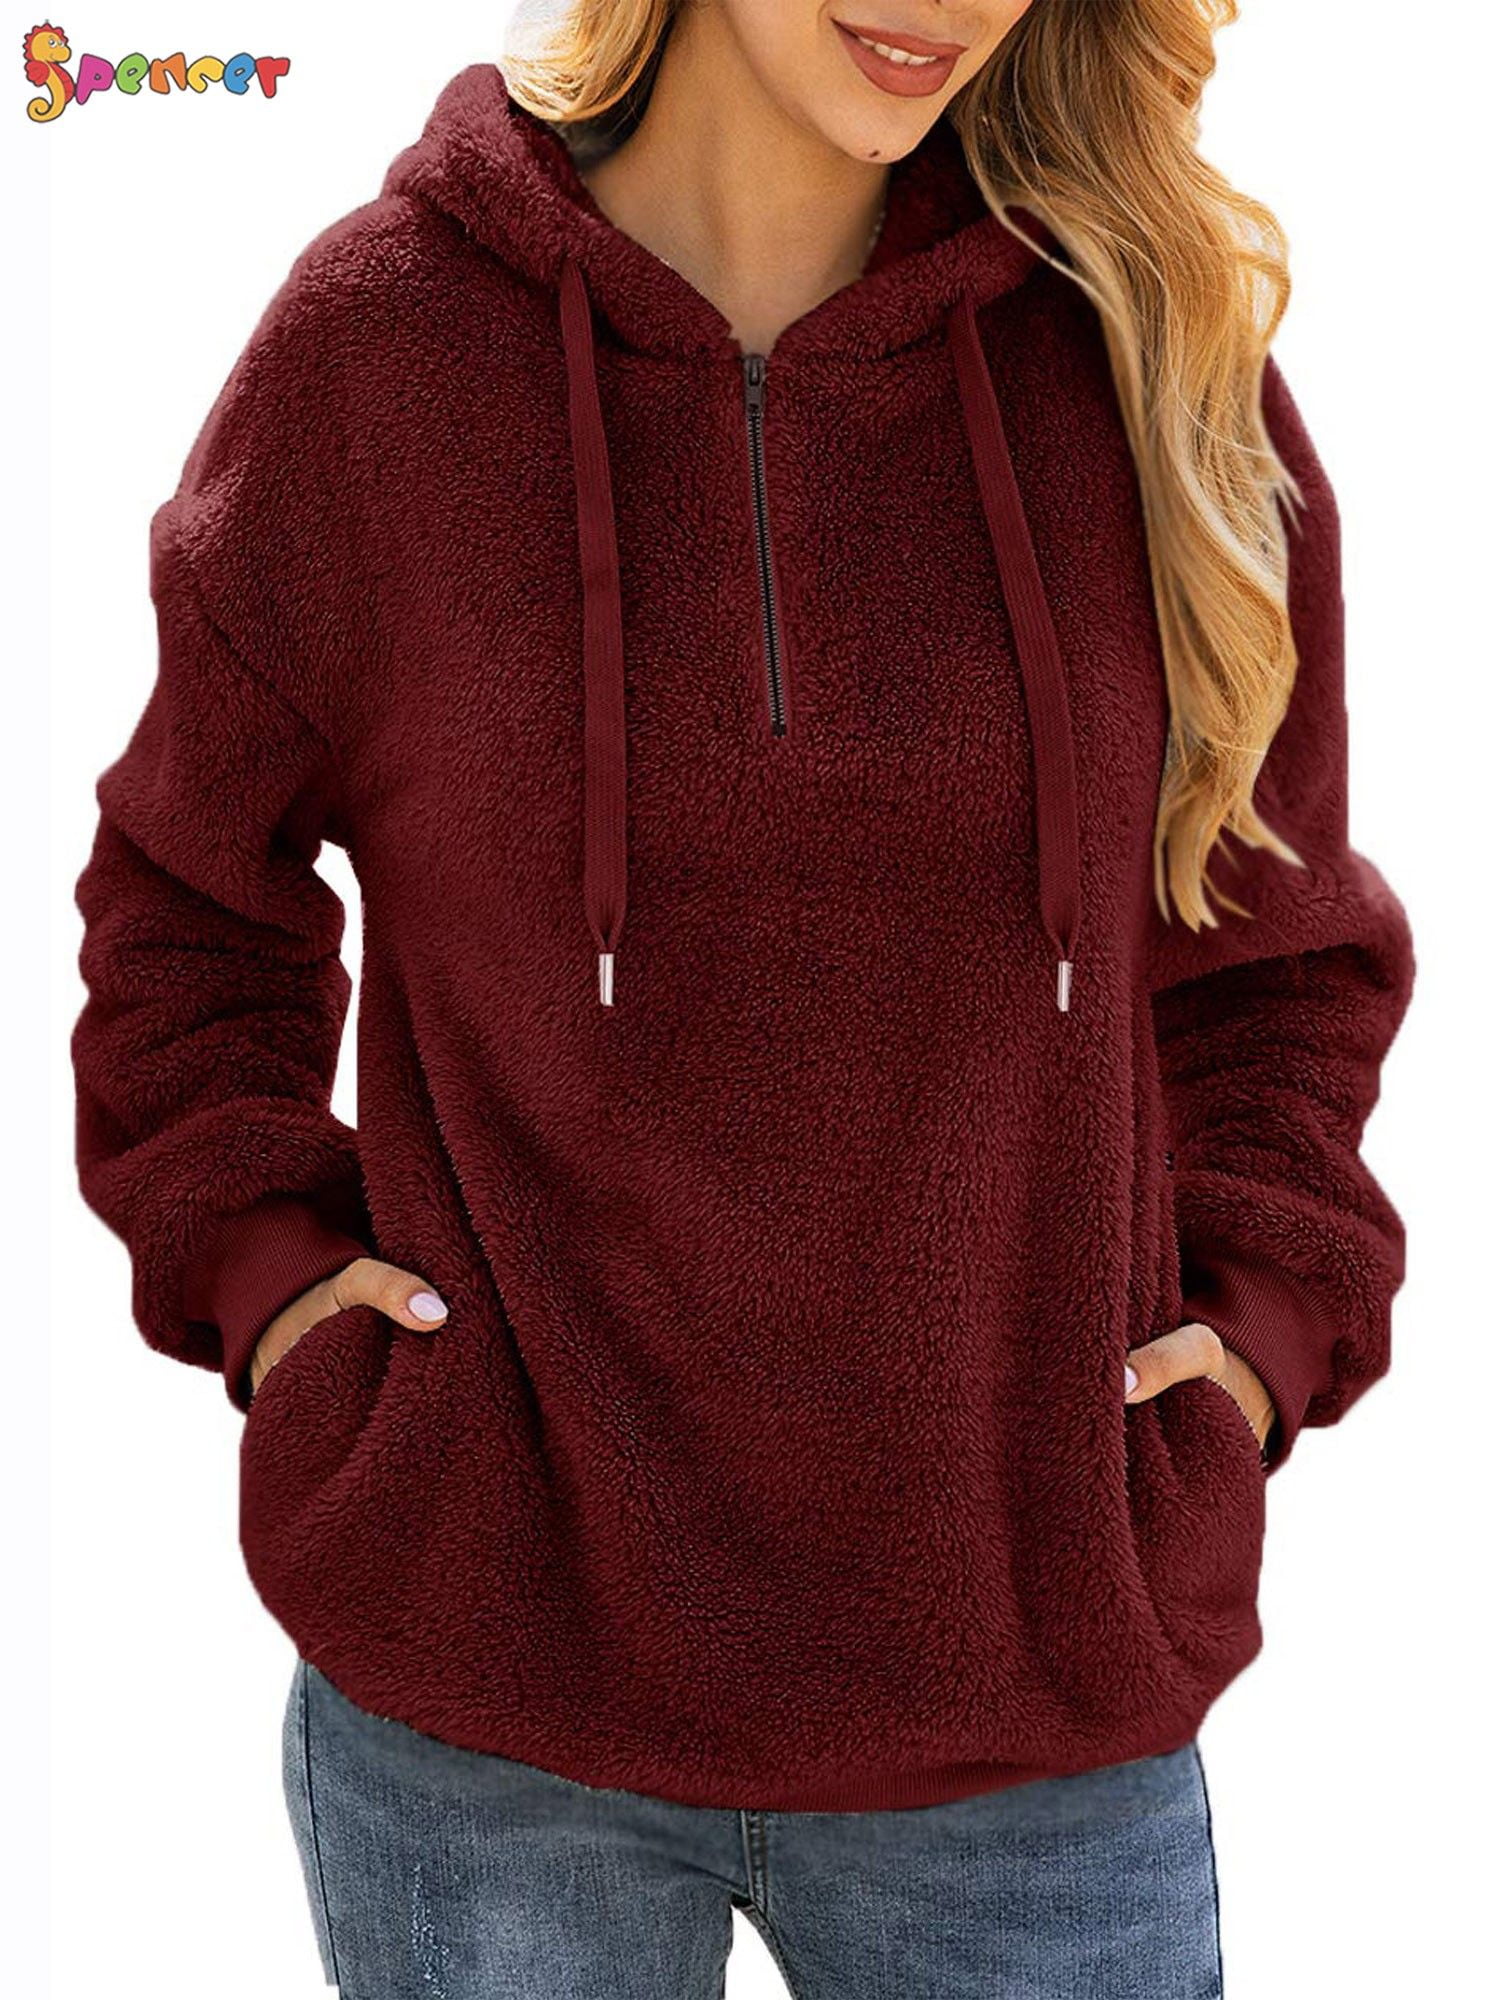 Spencer Women's Warm Fuzzy Fleece Sweatshirt Casual Loose Sherpa